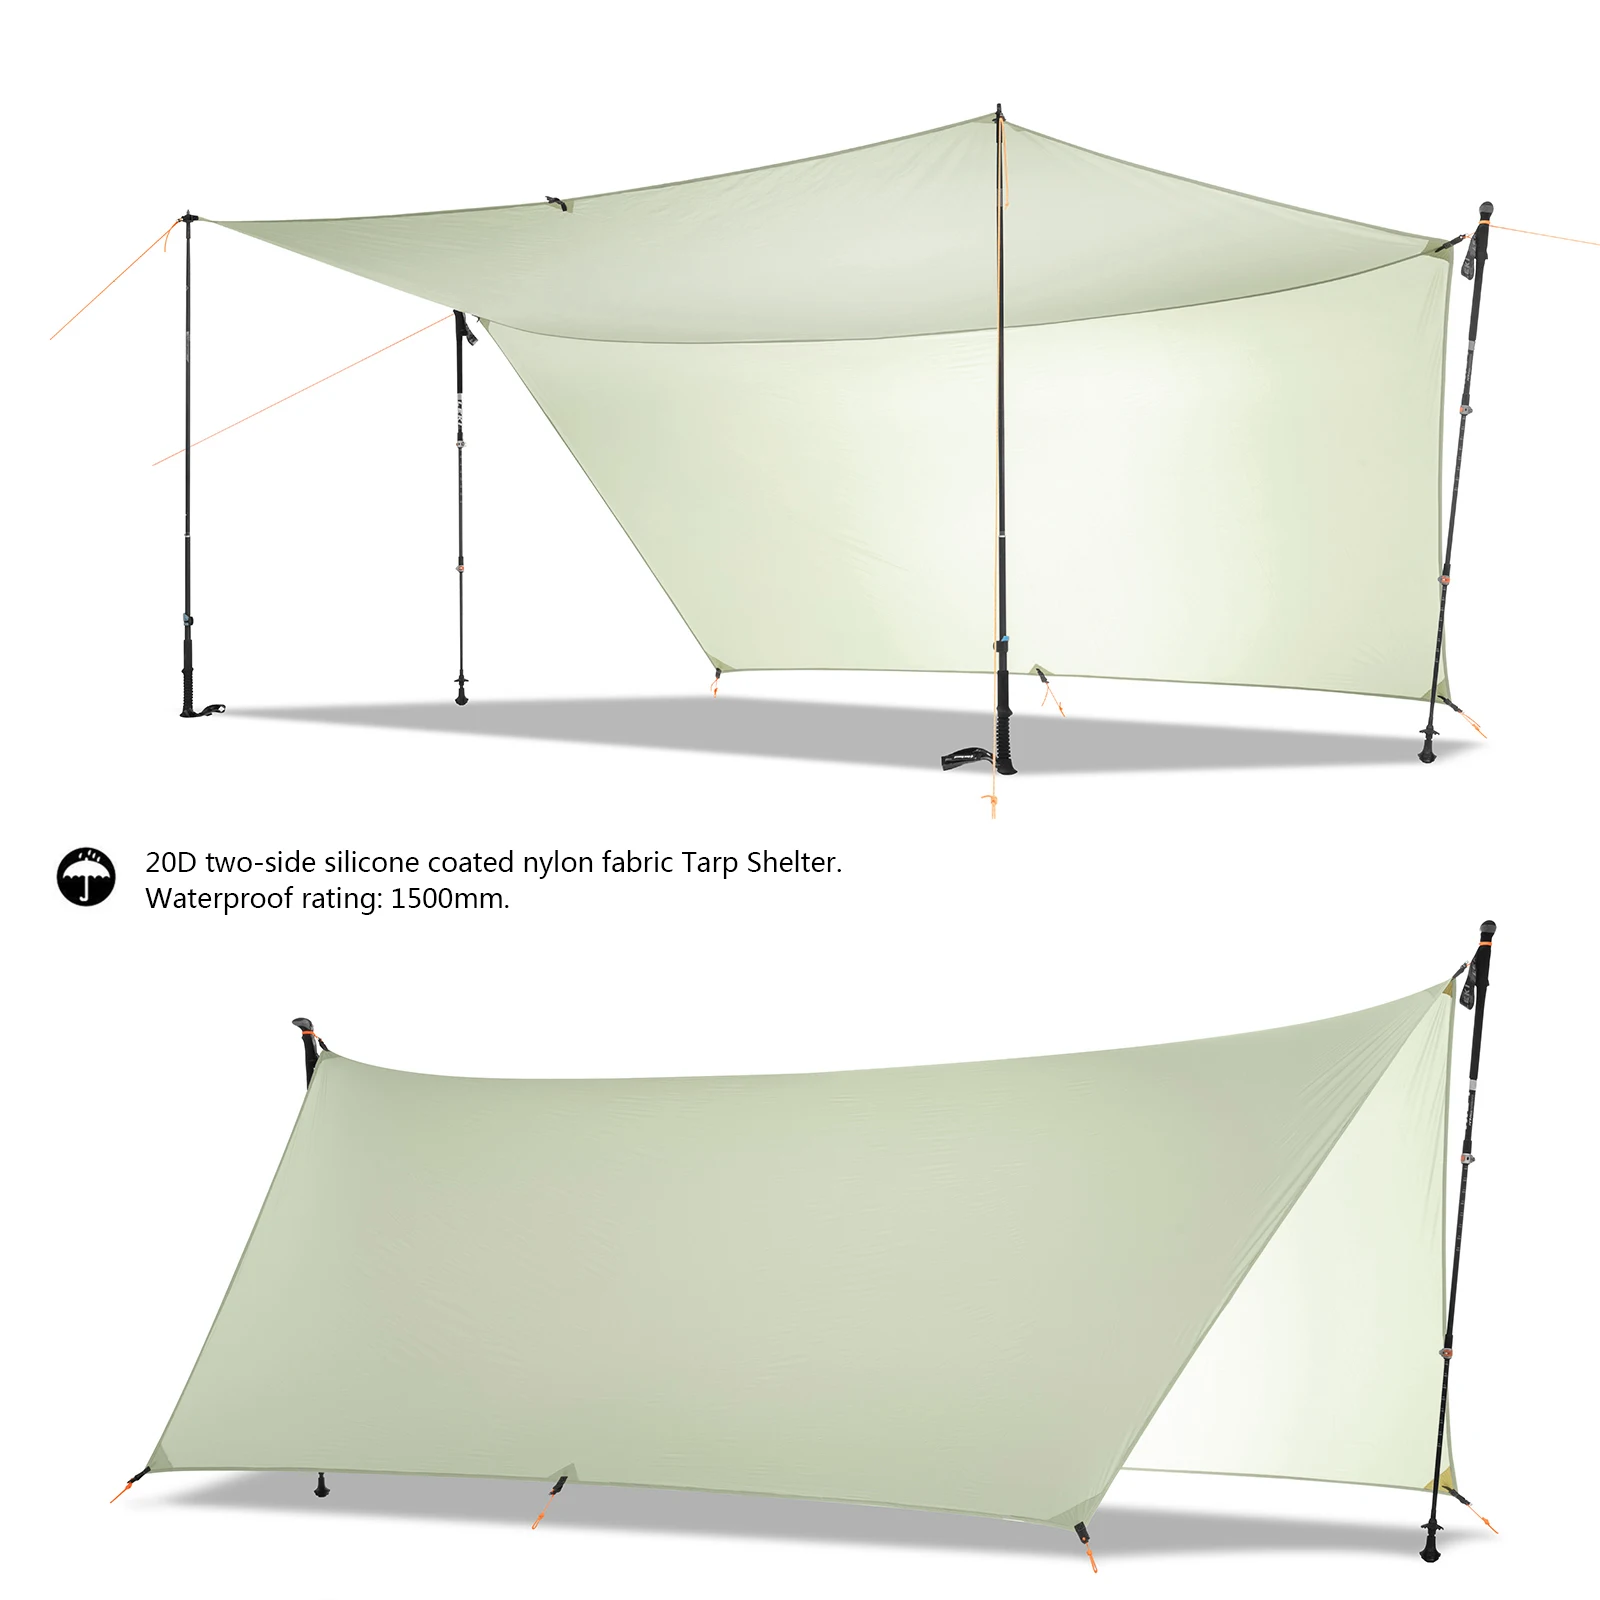 450 г 20D Двусторонняя нейлоновая Брезентовая Сверхлегкая Солнцезащитная палатка с силиконовым покрытием Пляжная палатка тент Пергола навес дождевой Кемпинг солнцезащитный навес